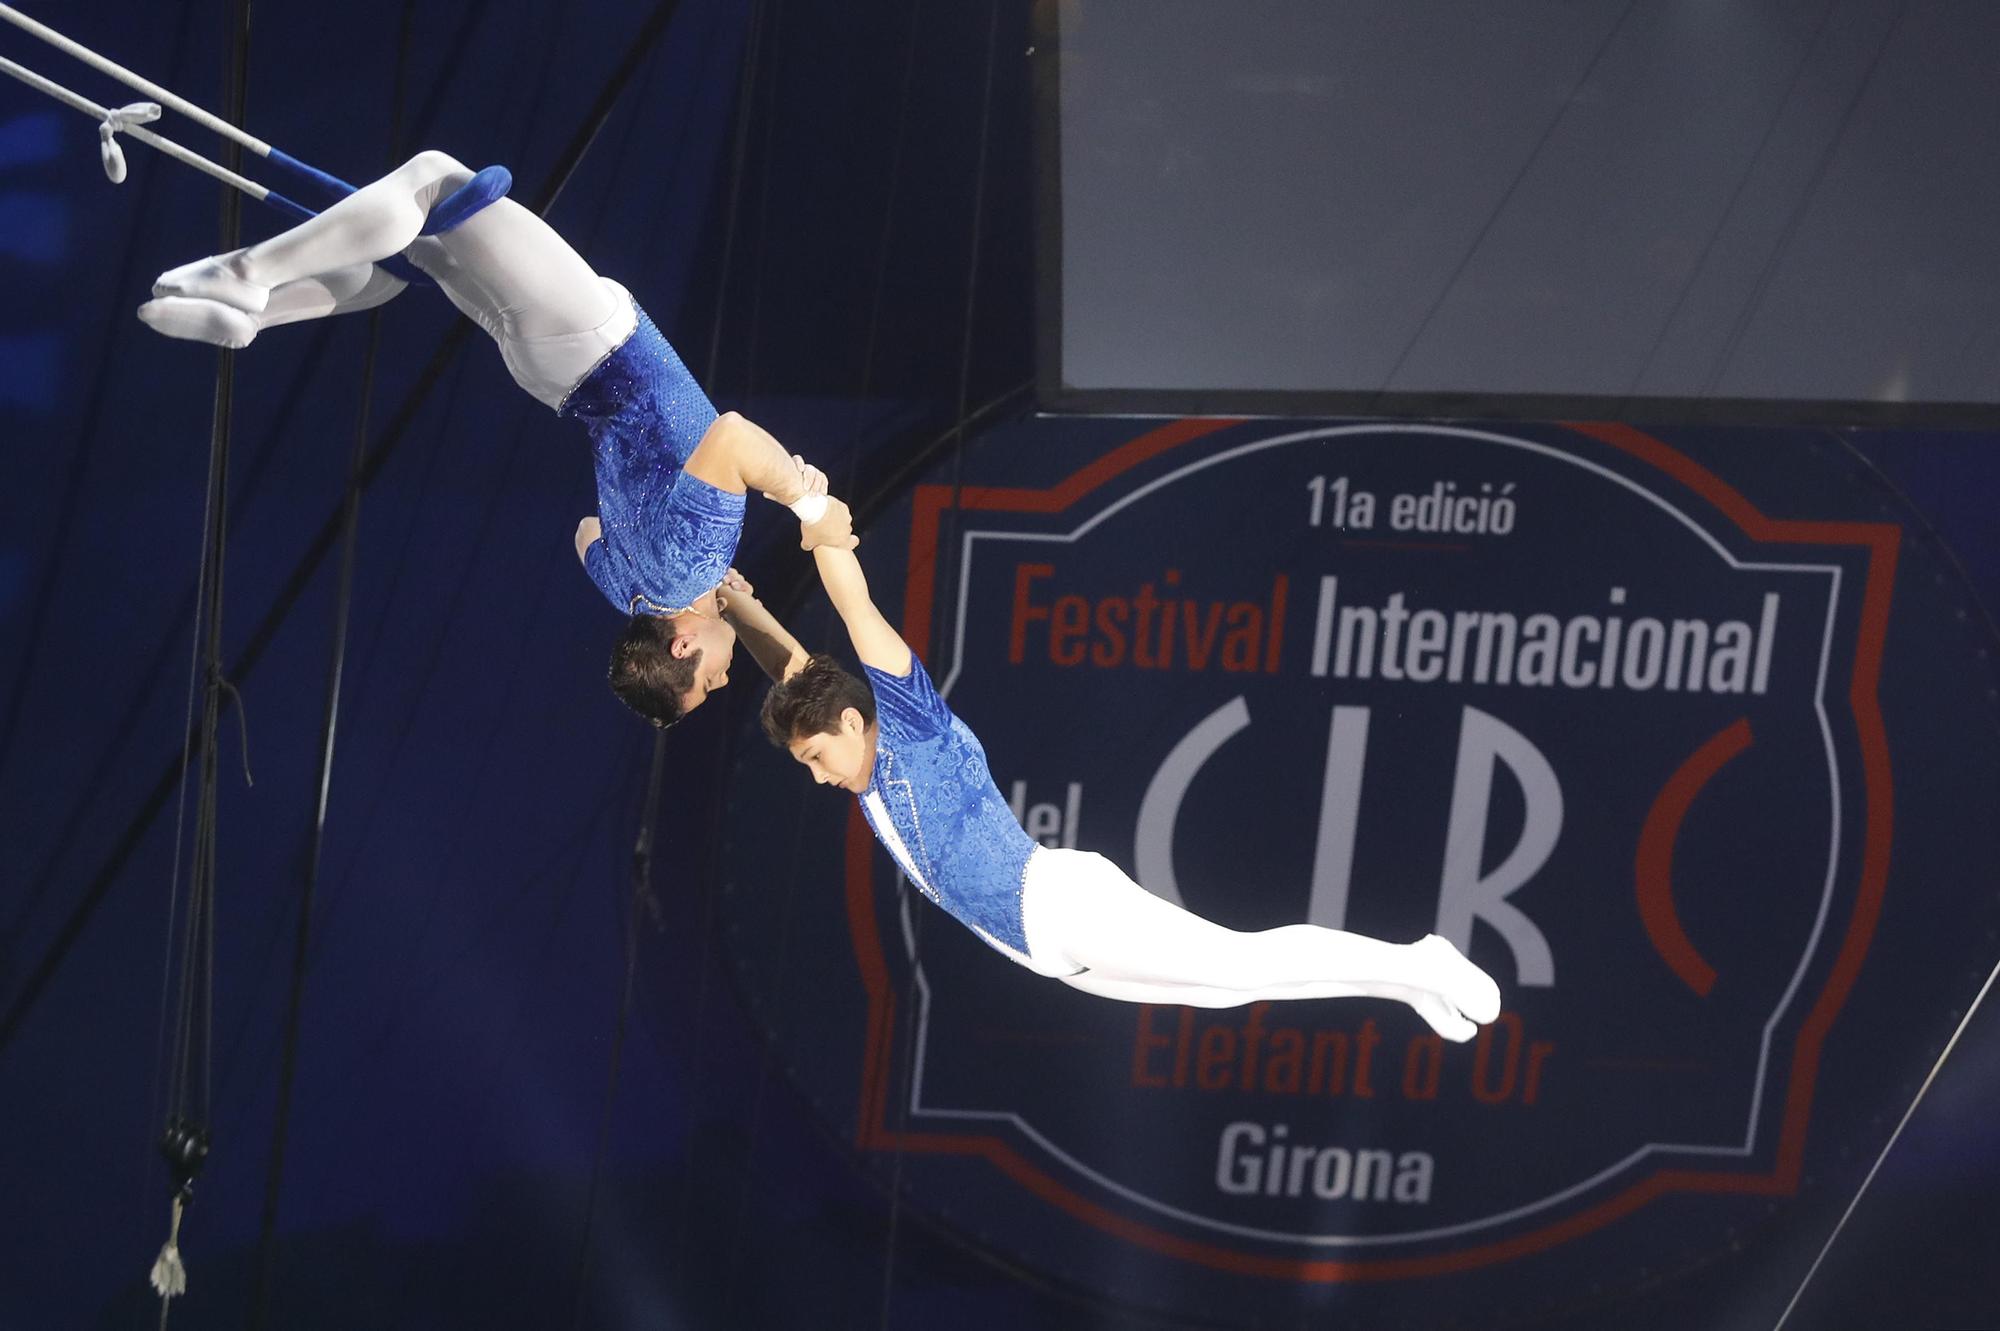 El Festival Internacional del Circ de Girona acull el record Guinness de 30 canvis de vestit en 39 segons